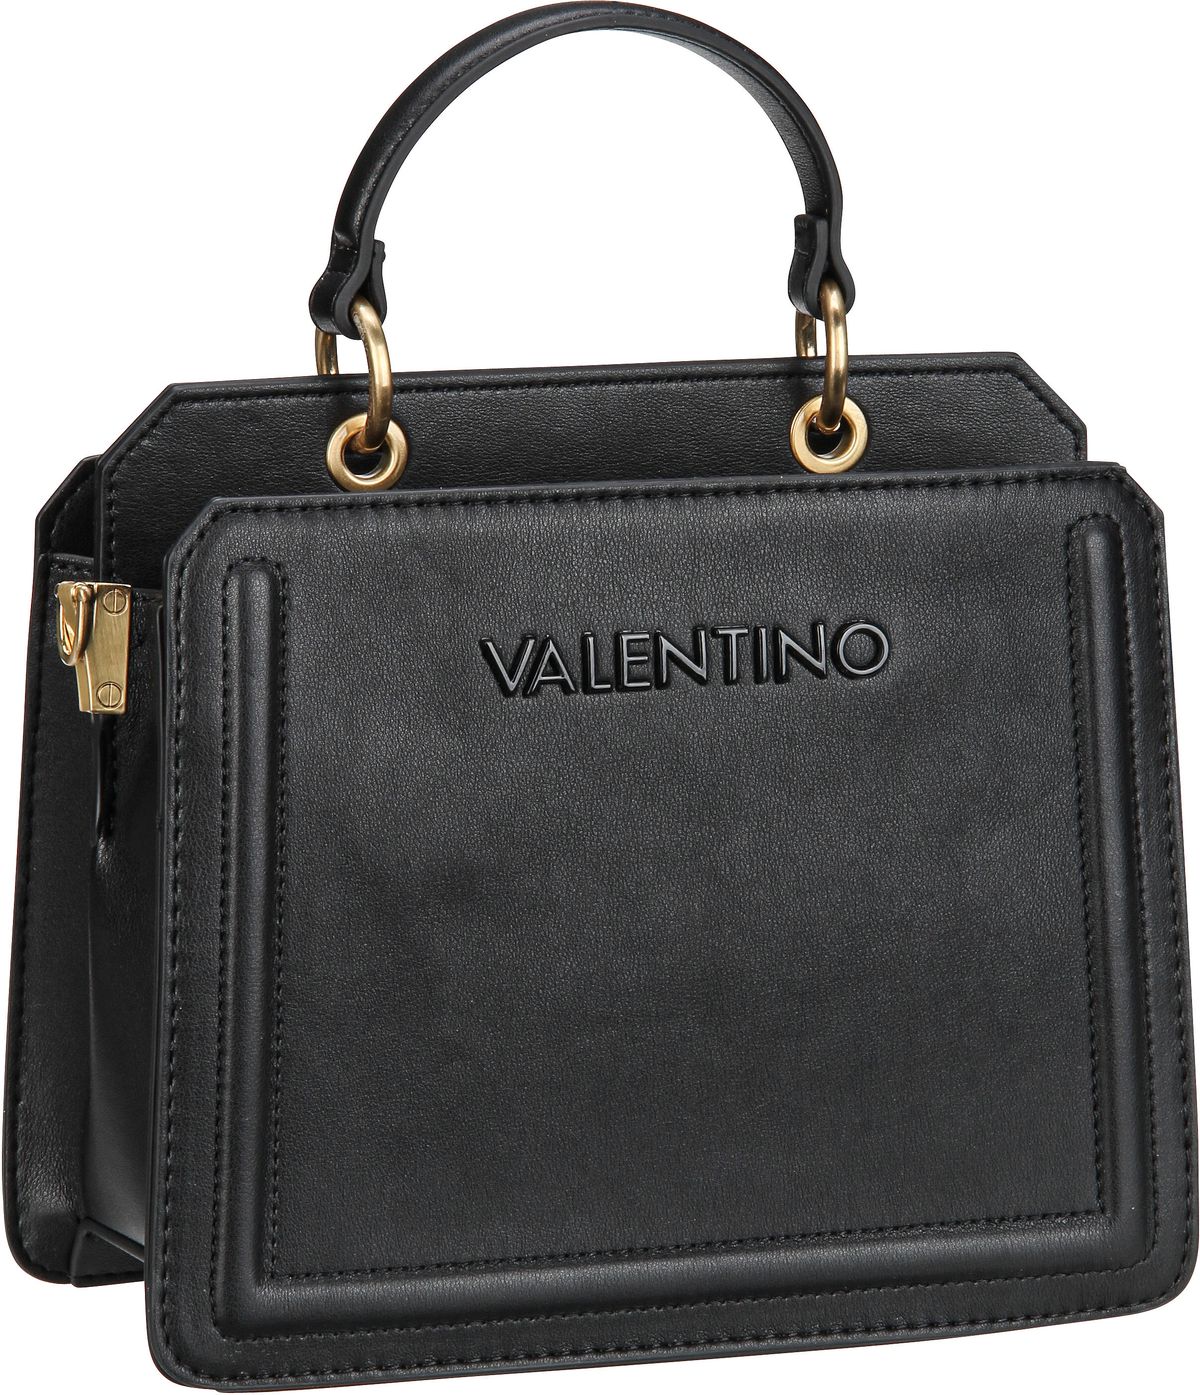 Valentino Ipanema RE Q01  in Schwarz (5.9 Liter), Handtasche